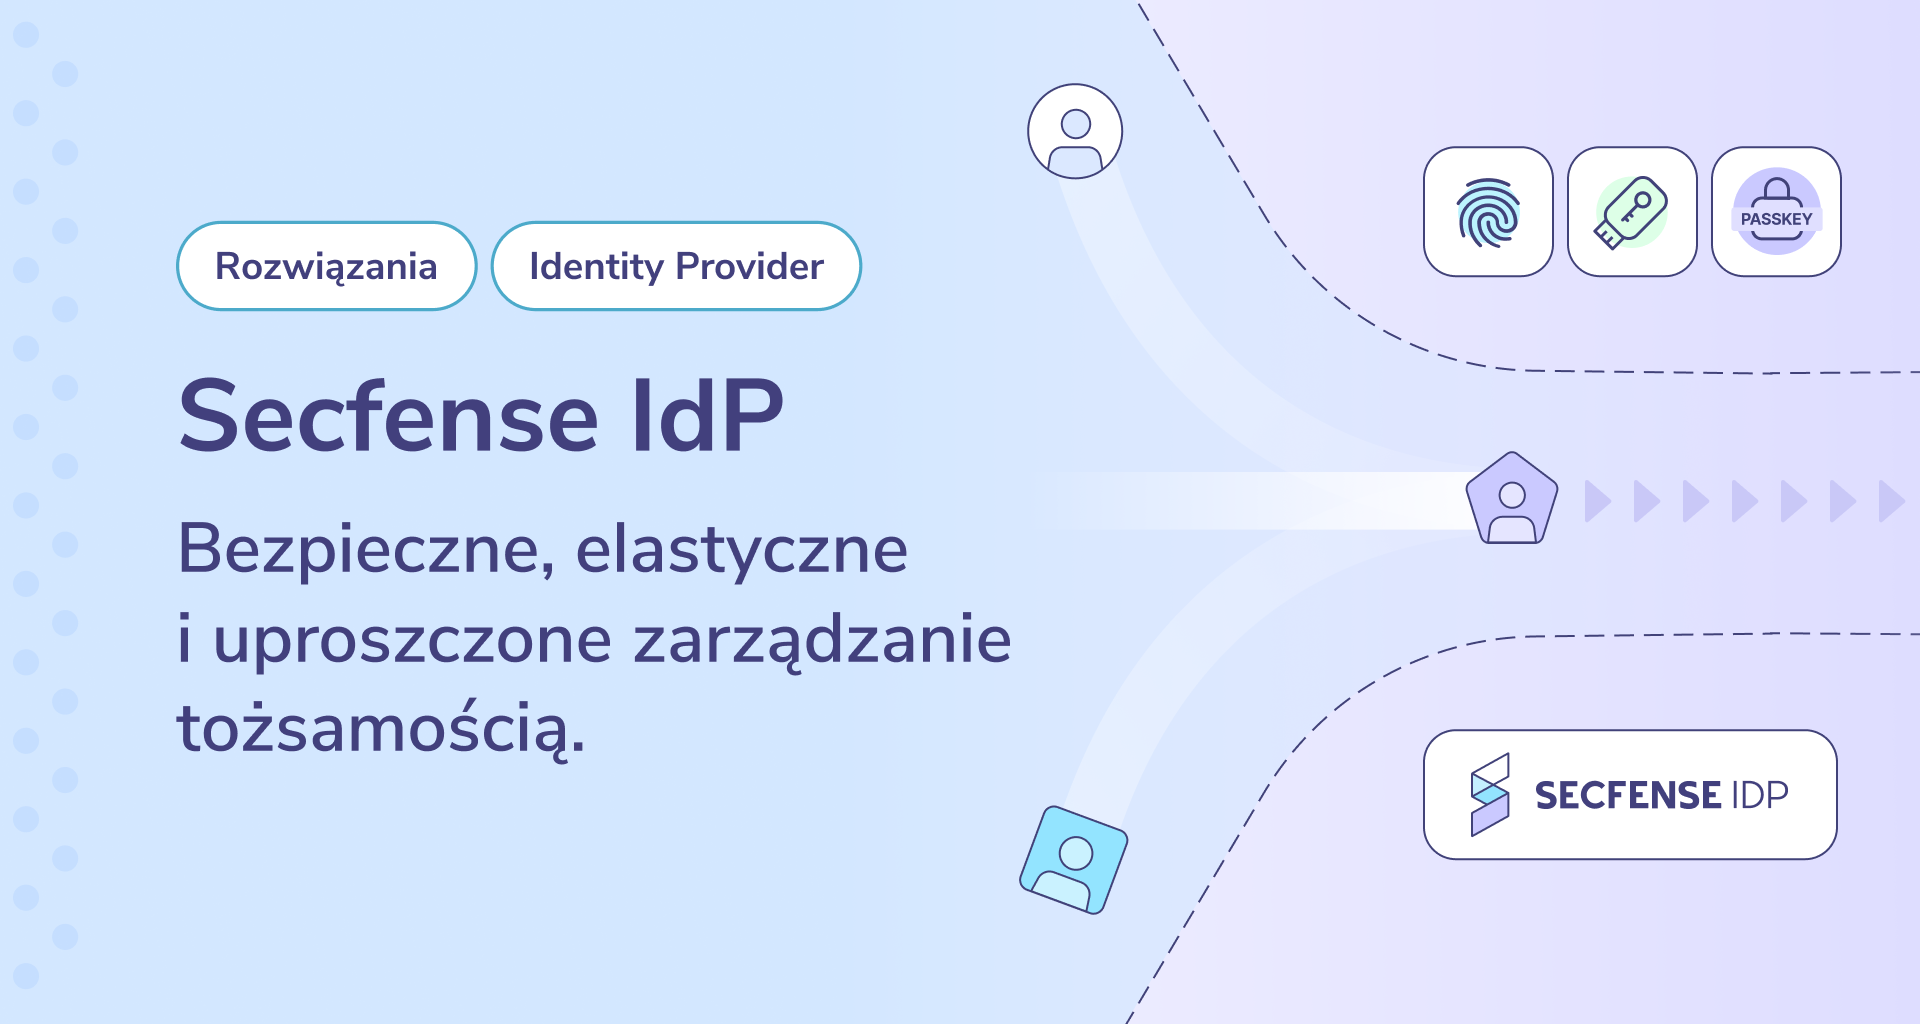 Secfense IdP (Identity Provider) to nowe rozwiązanie w ofercie Secfense. Secfense IdP został stworzony, aby pomóc w żonglowaniu wieloma tożsamościami i płynnym przechodzeniu między różnymi systemami IAM. Dzięki Secfense IdP firmy mogą wybierać funkcje od różnych dostawców IAM bez konieczności dokonywania pełnej migracji.